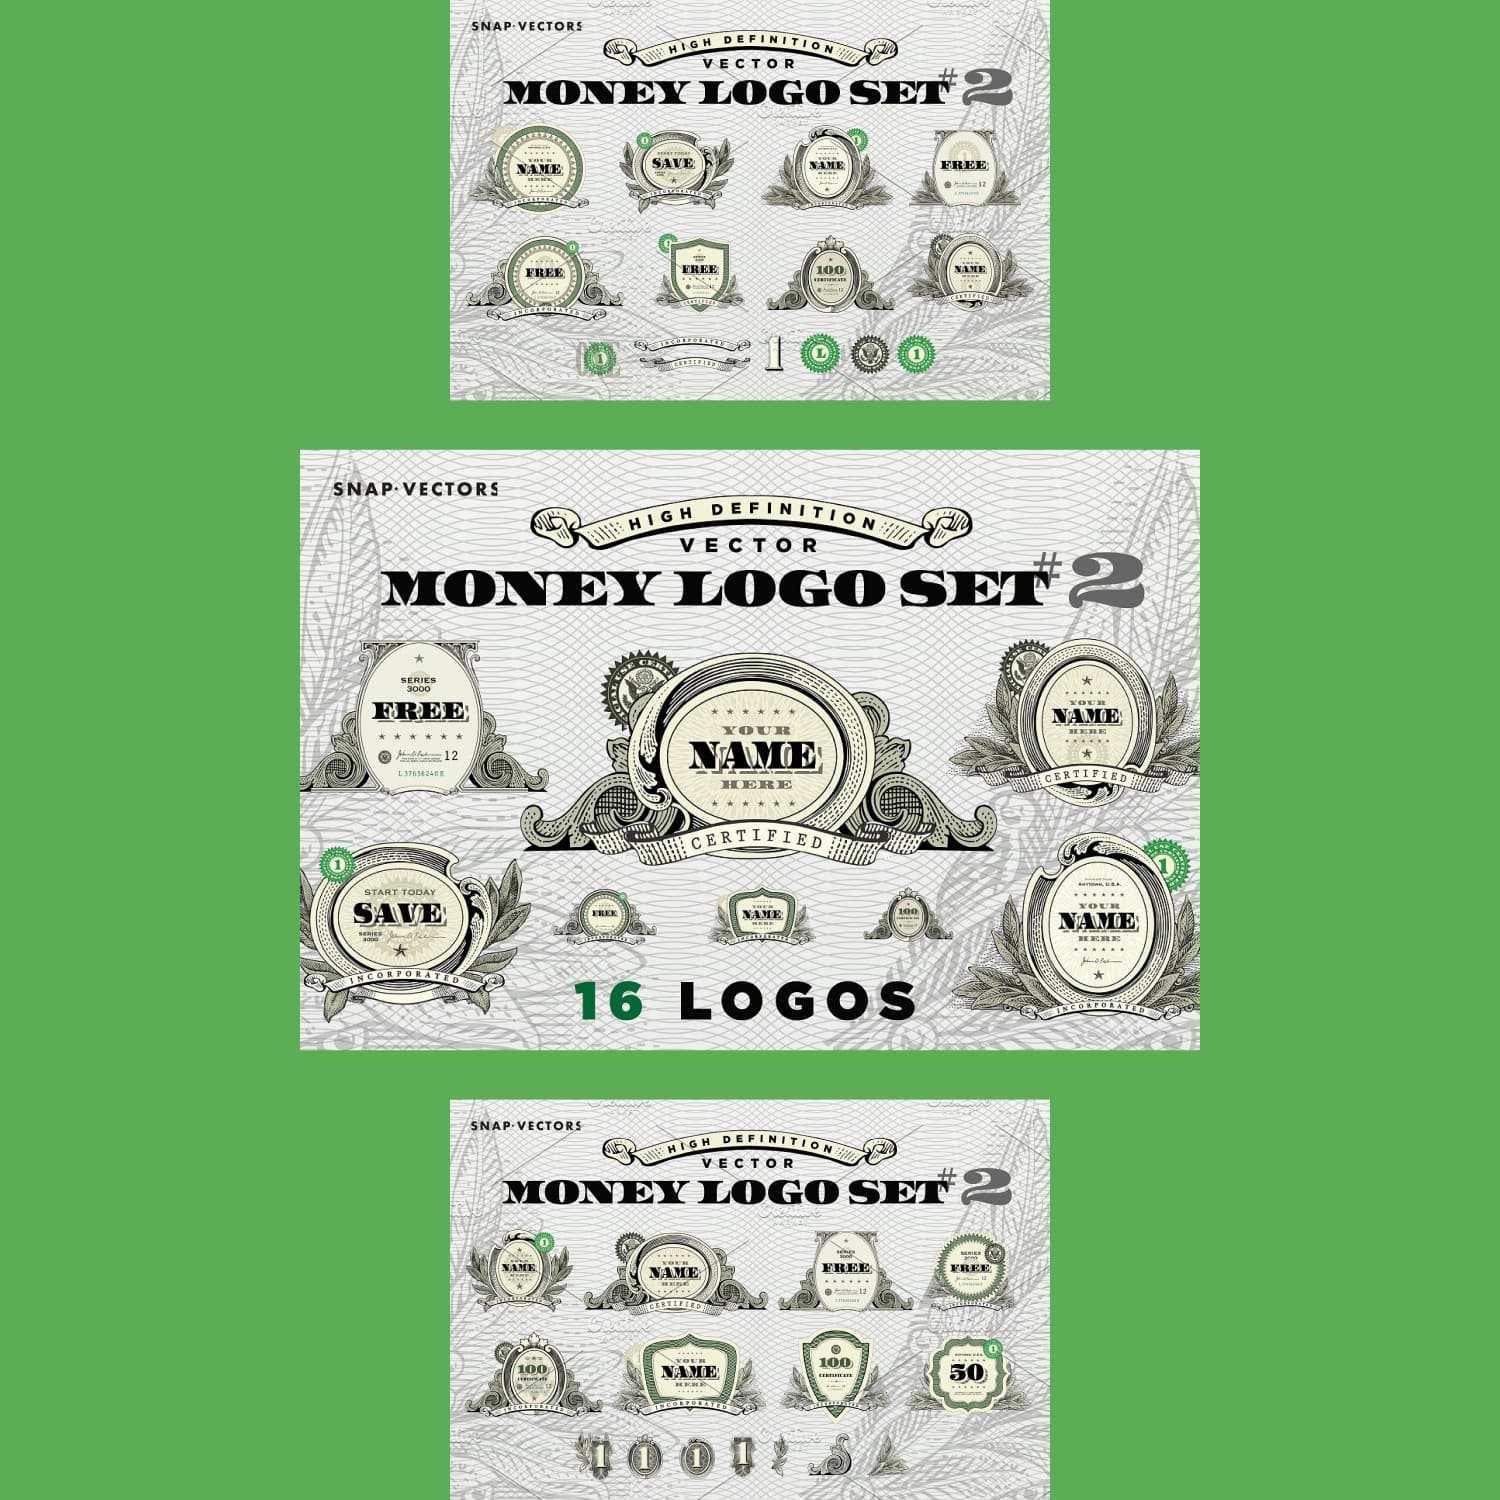 Vector Money Logo Set #2 cover.